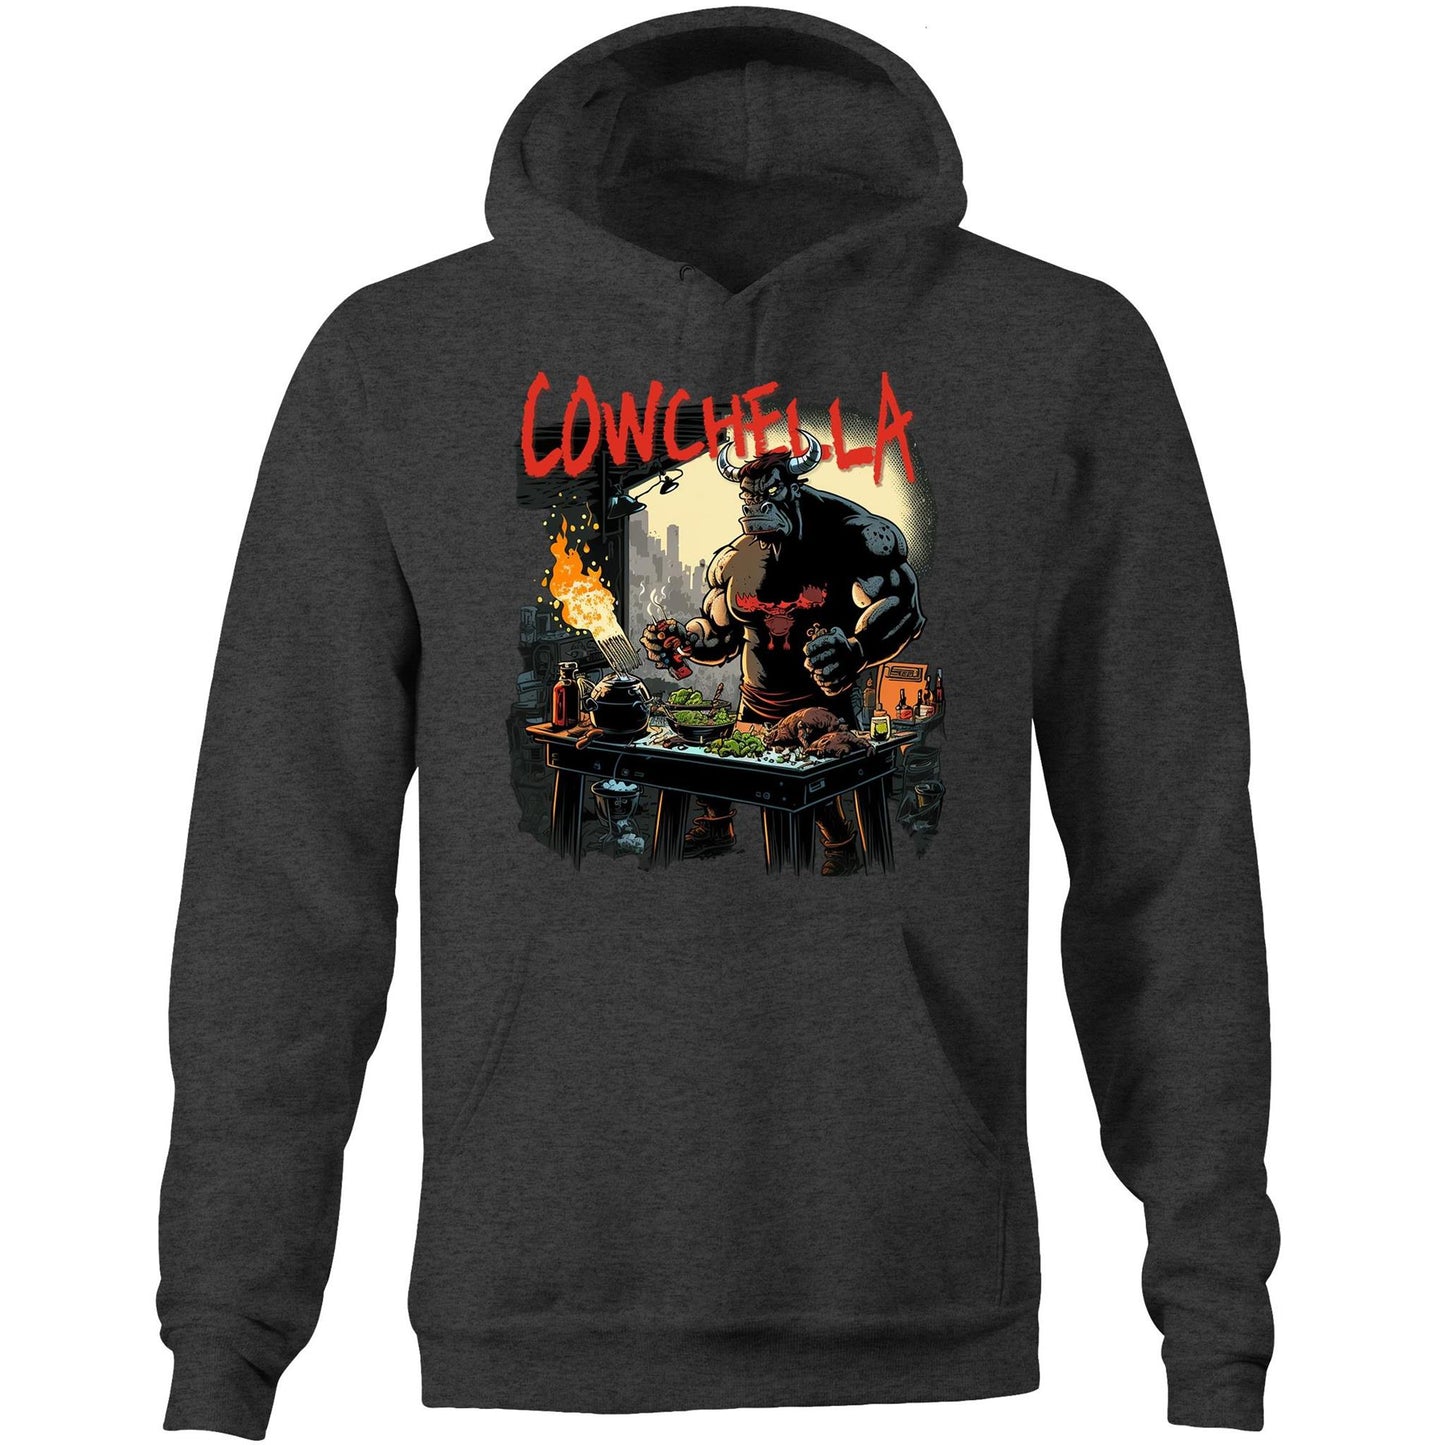 Cowchella 2023 - Pocket Hoodie Sweatshirt